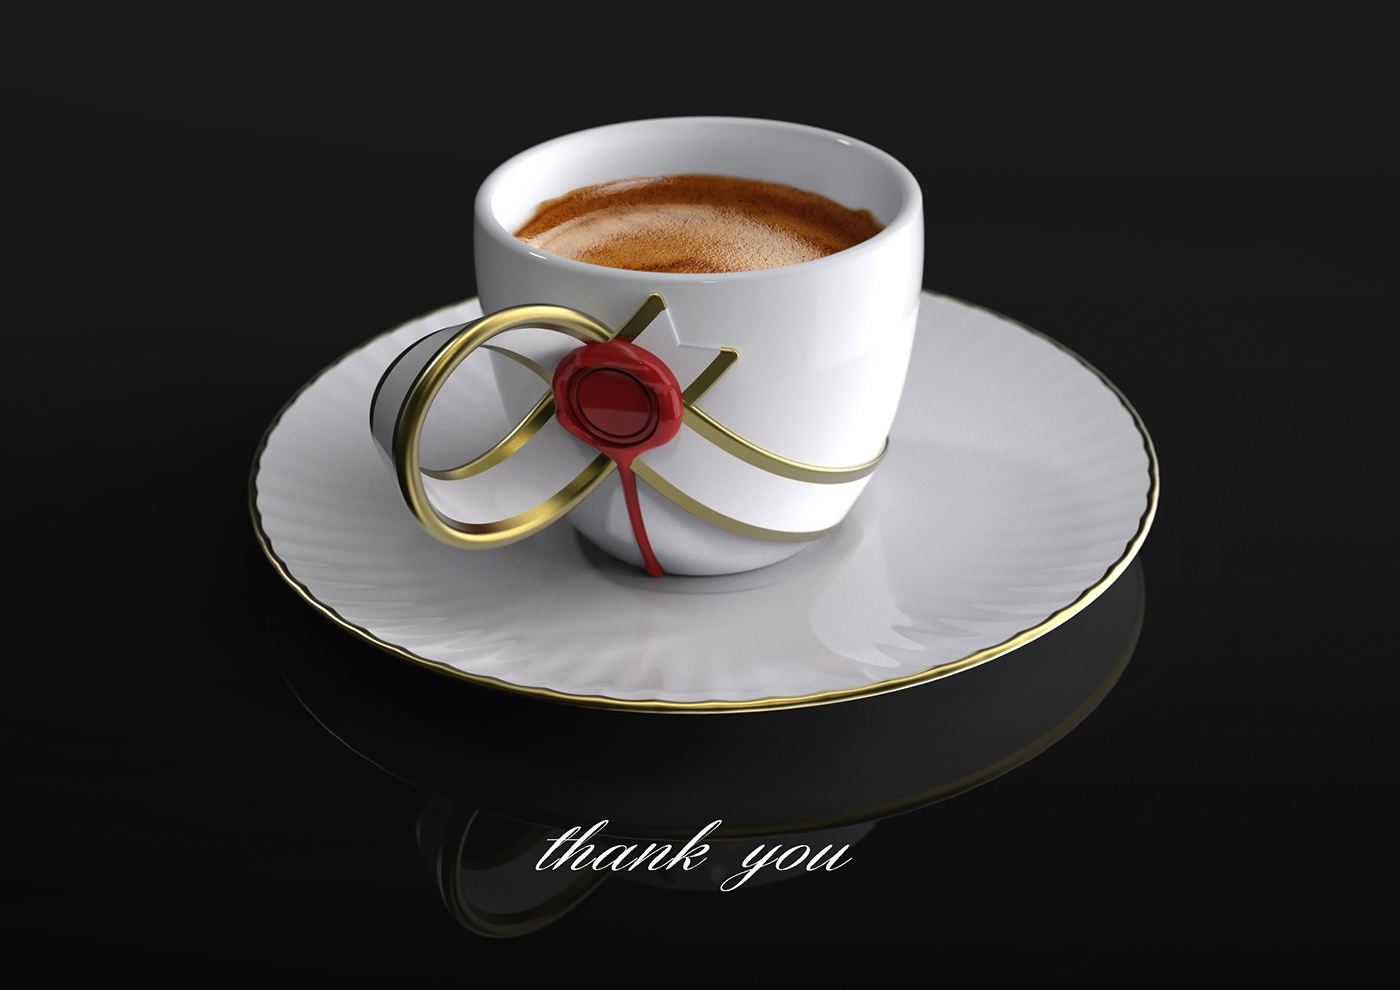 Coffee espresso porcelain tea cup